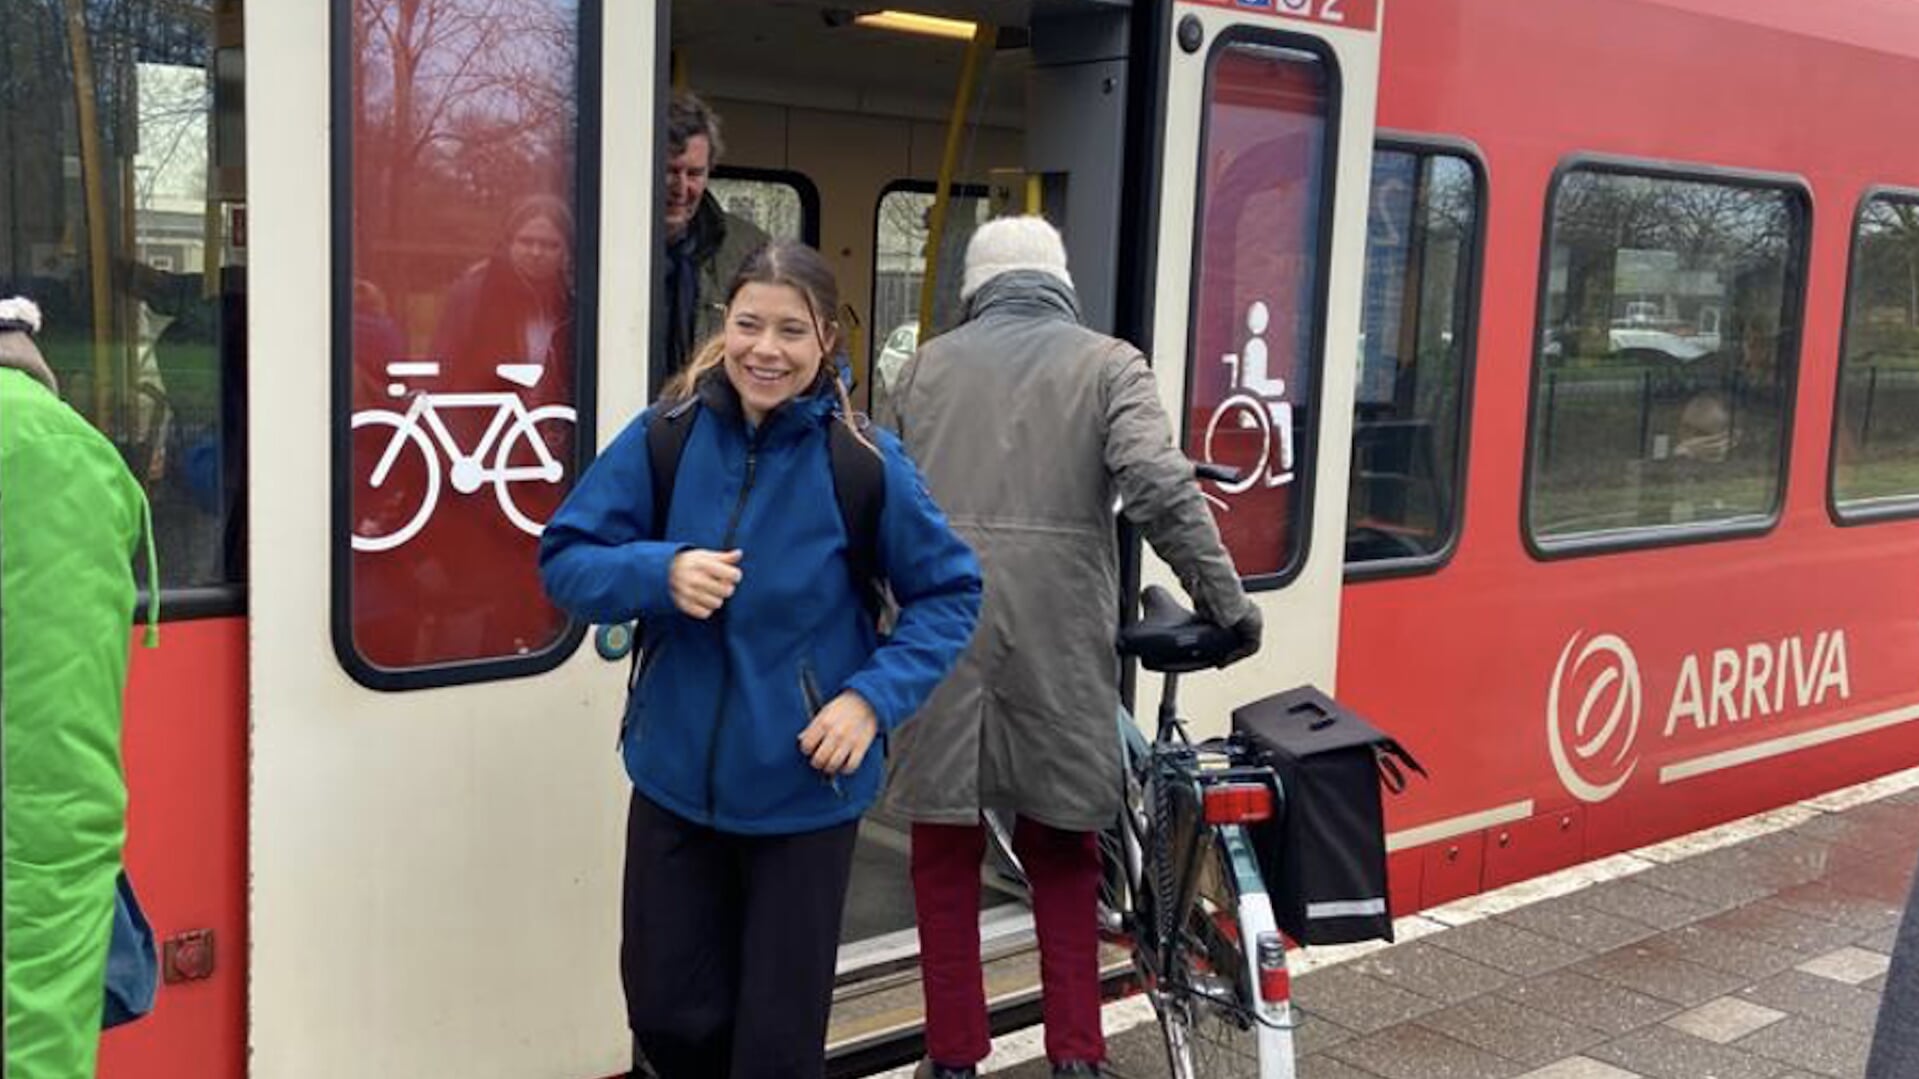 Tweede Kamerlid Lisa Westerveld toert met de trein door de Achterhoek in aanloopt naar de verkiezingen. Foto: PR